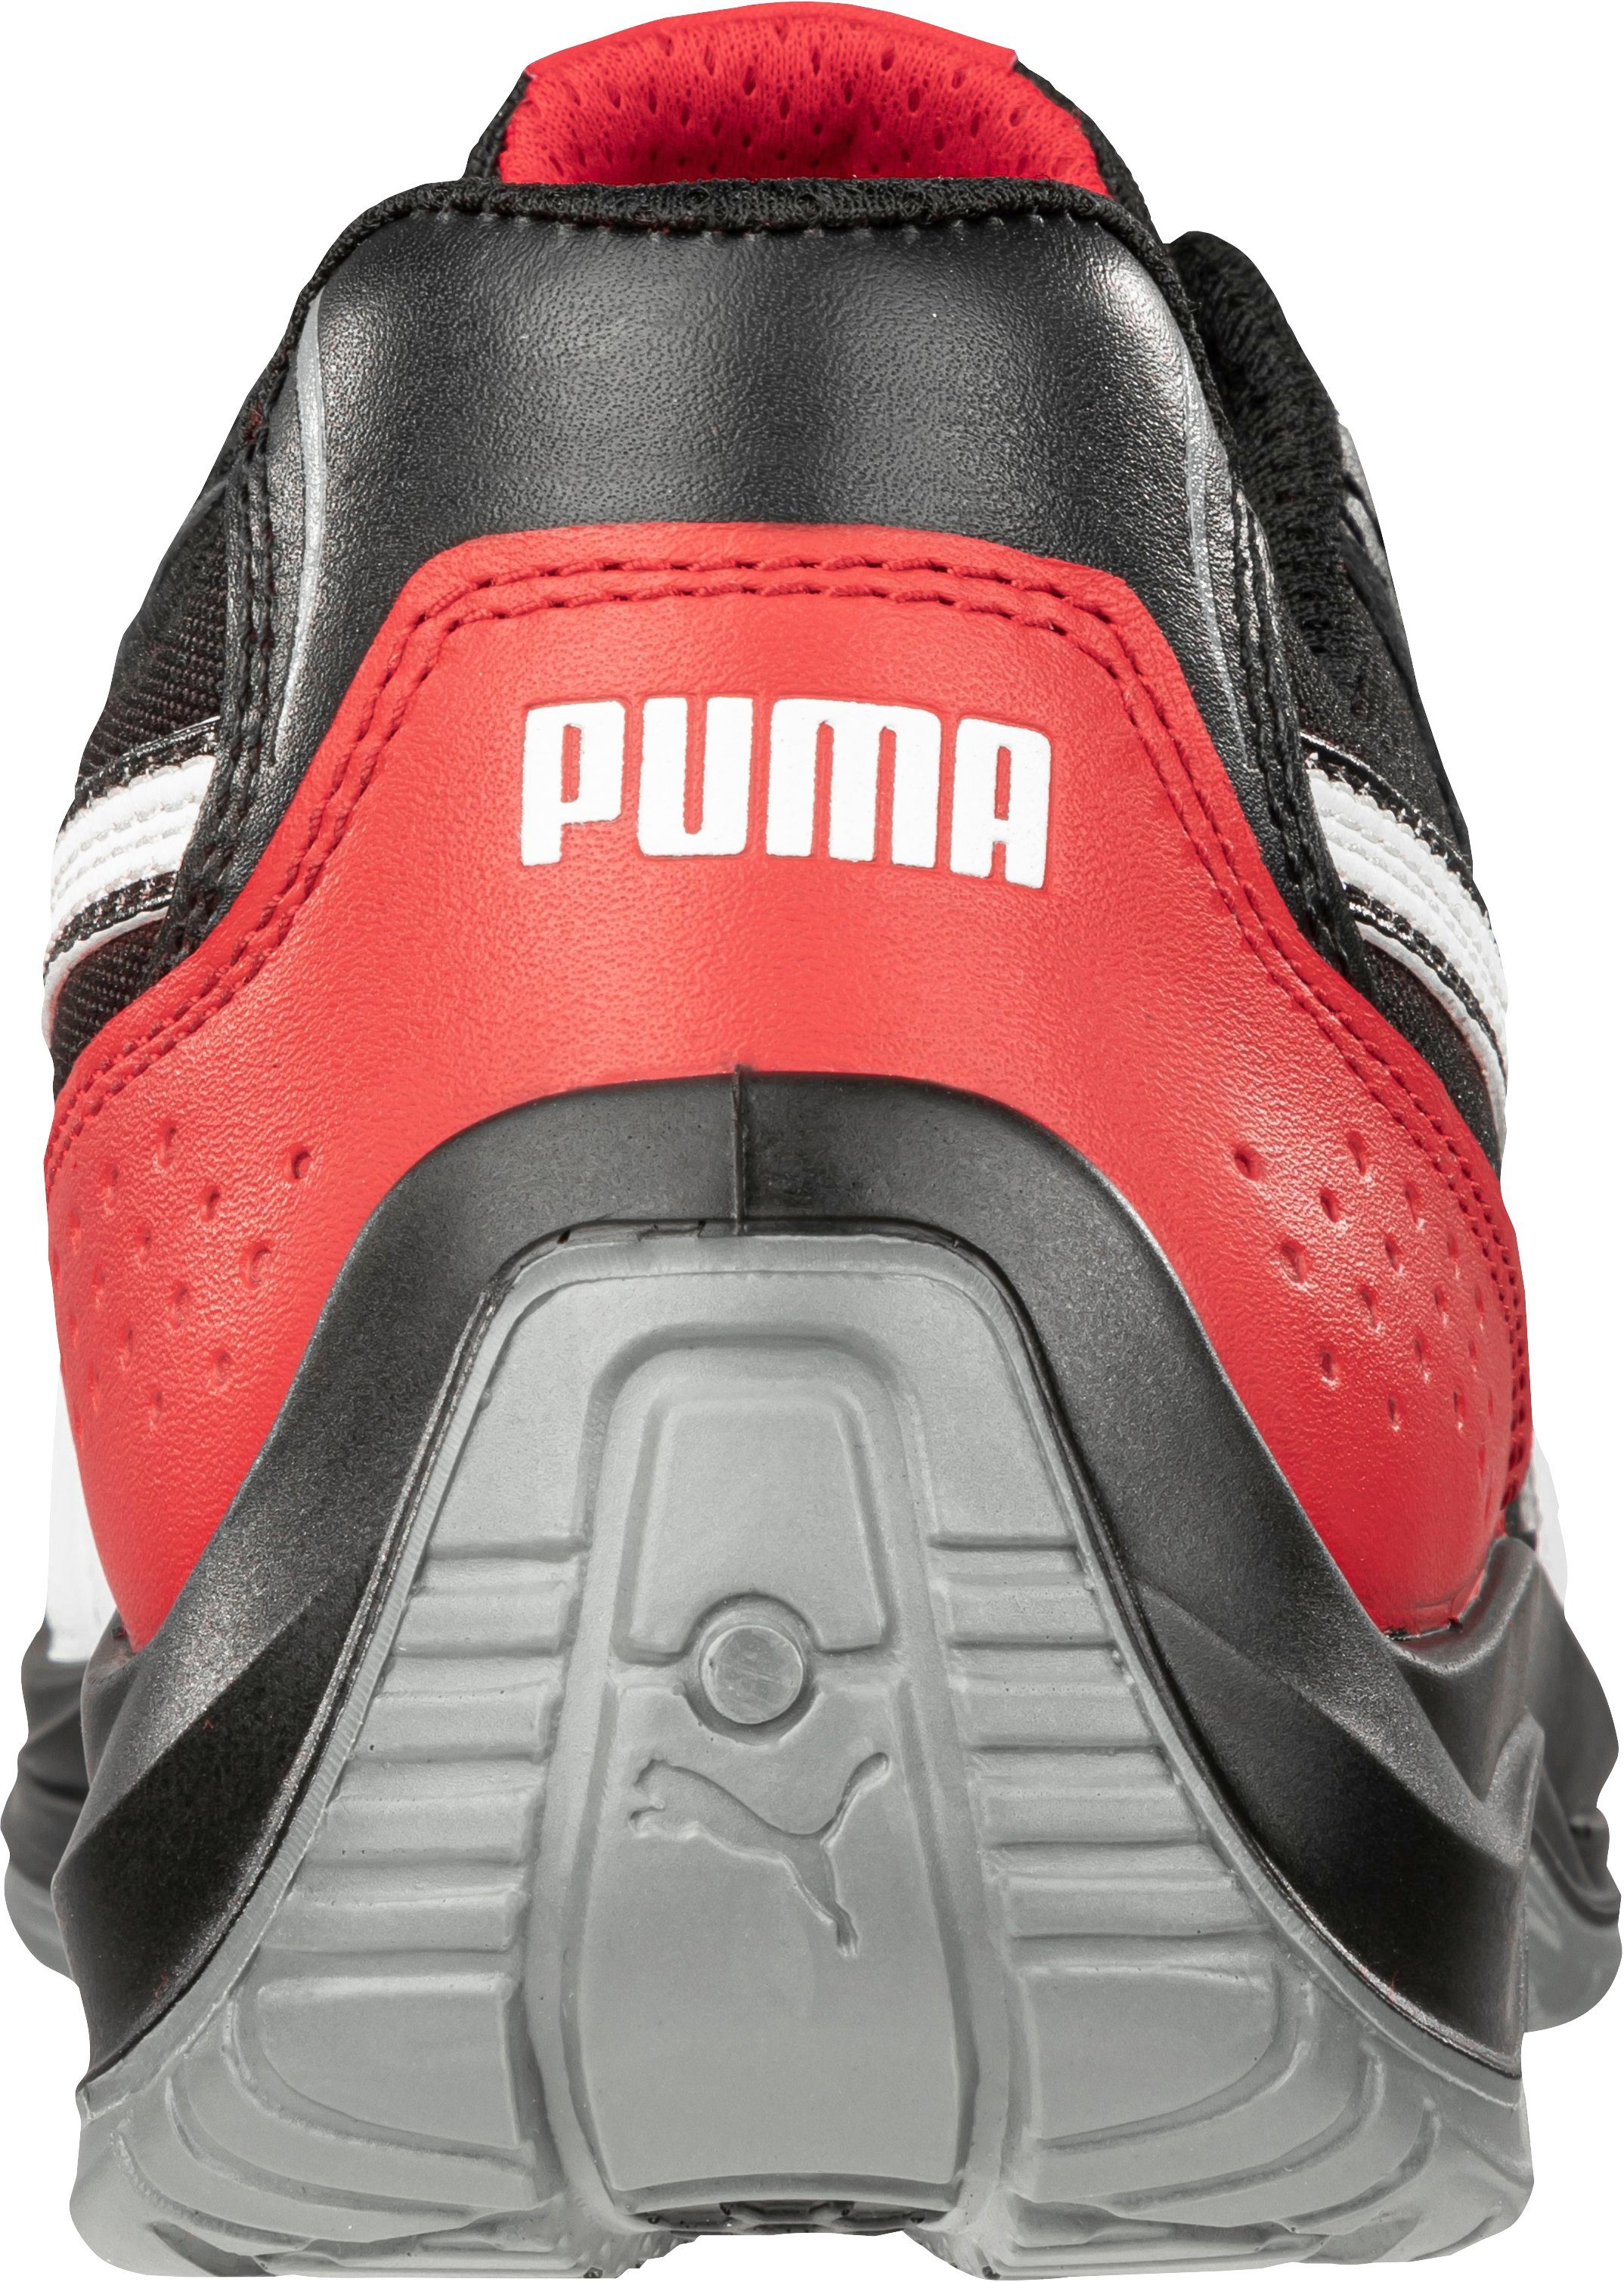 PUMA Safety rutschfest BLACK Sicherheitsschuh S3, LOW durchtrittsicher und TOURING